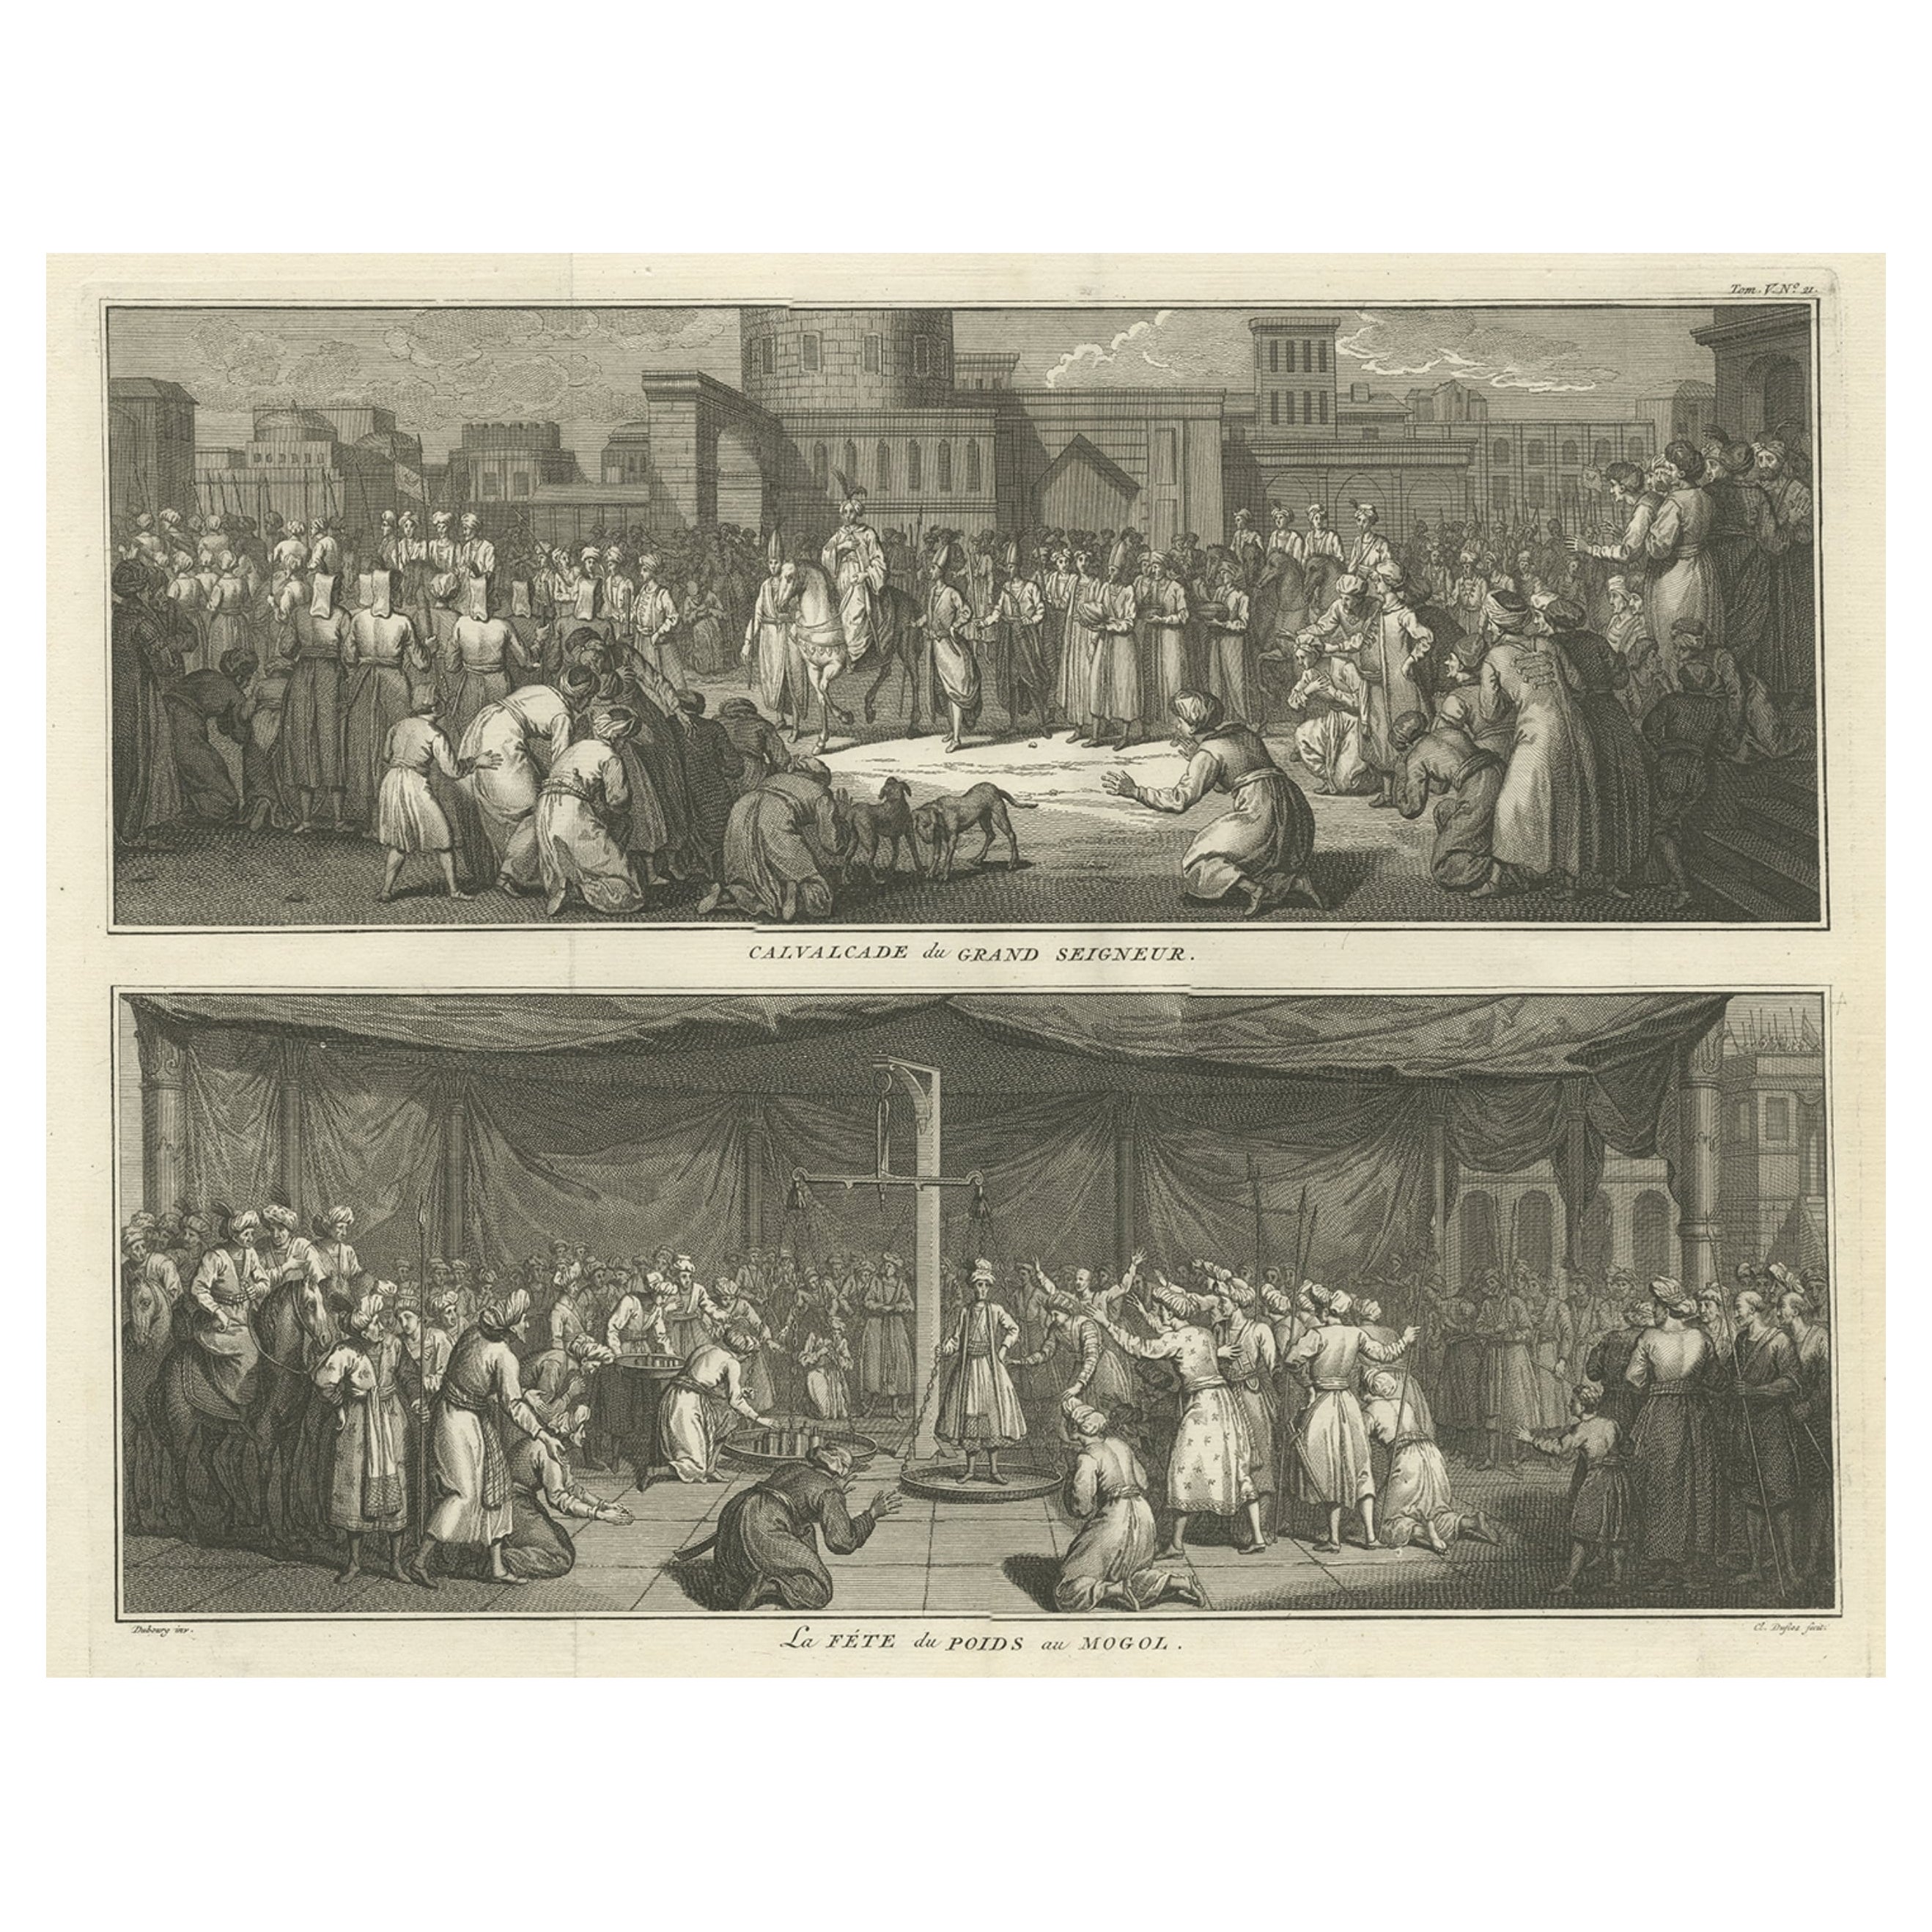 Calvalcade du Grand Lord et célébration des Poids de l'Empire moghol, 1727